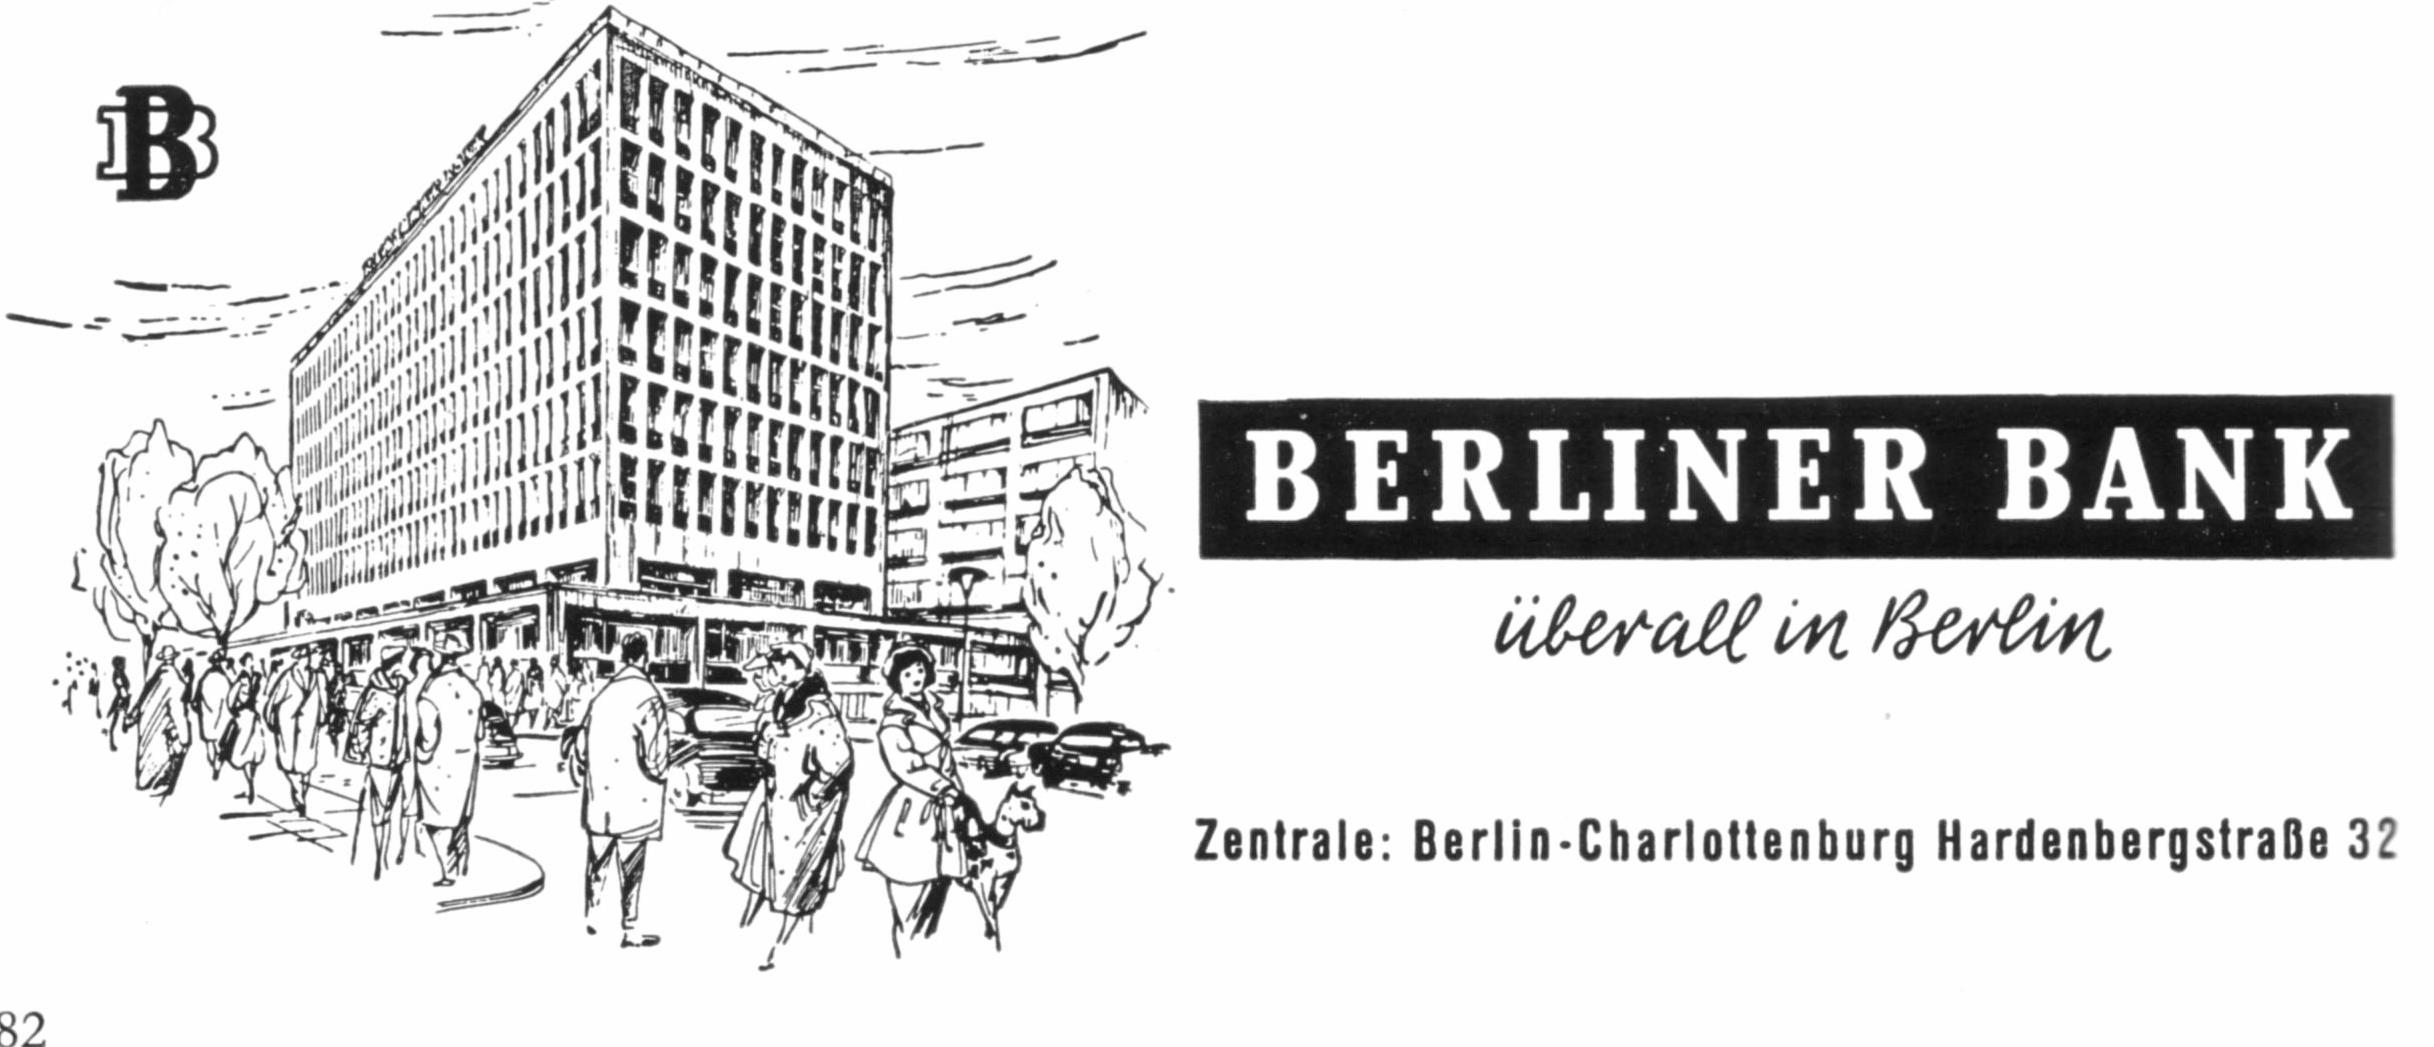 Berliner Bank 1959.jpg